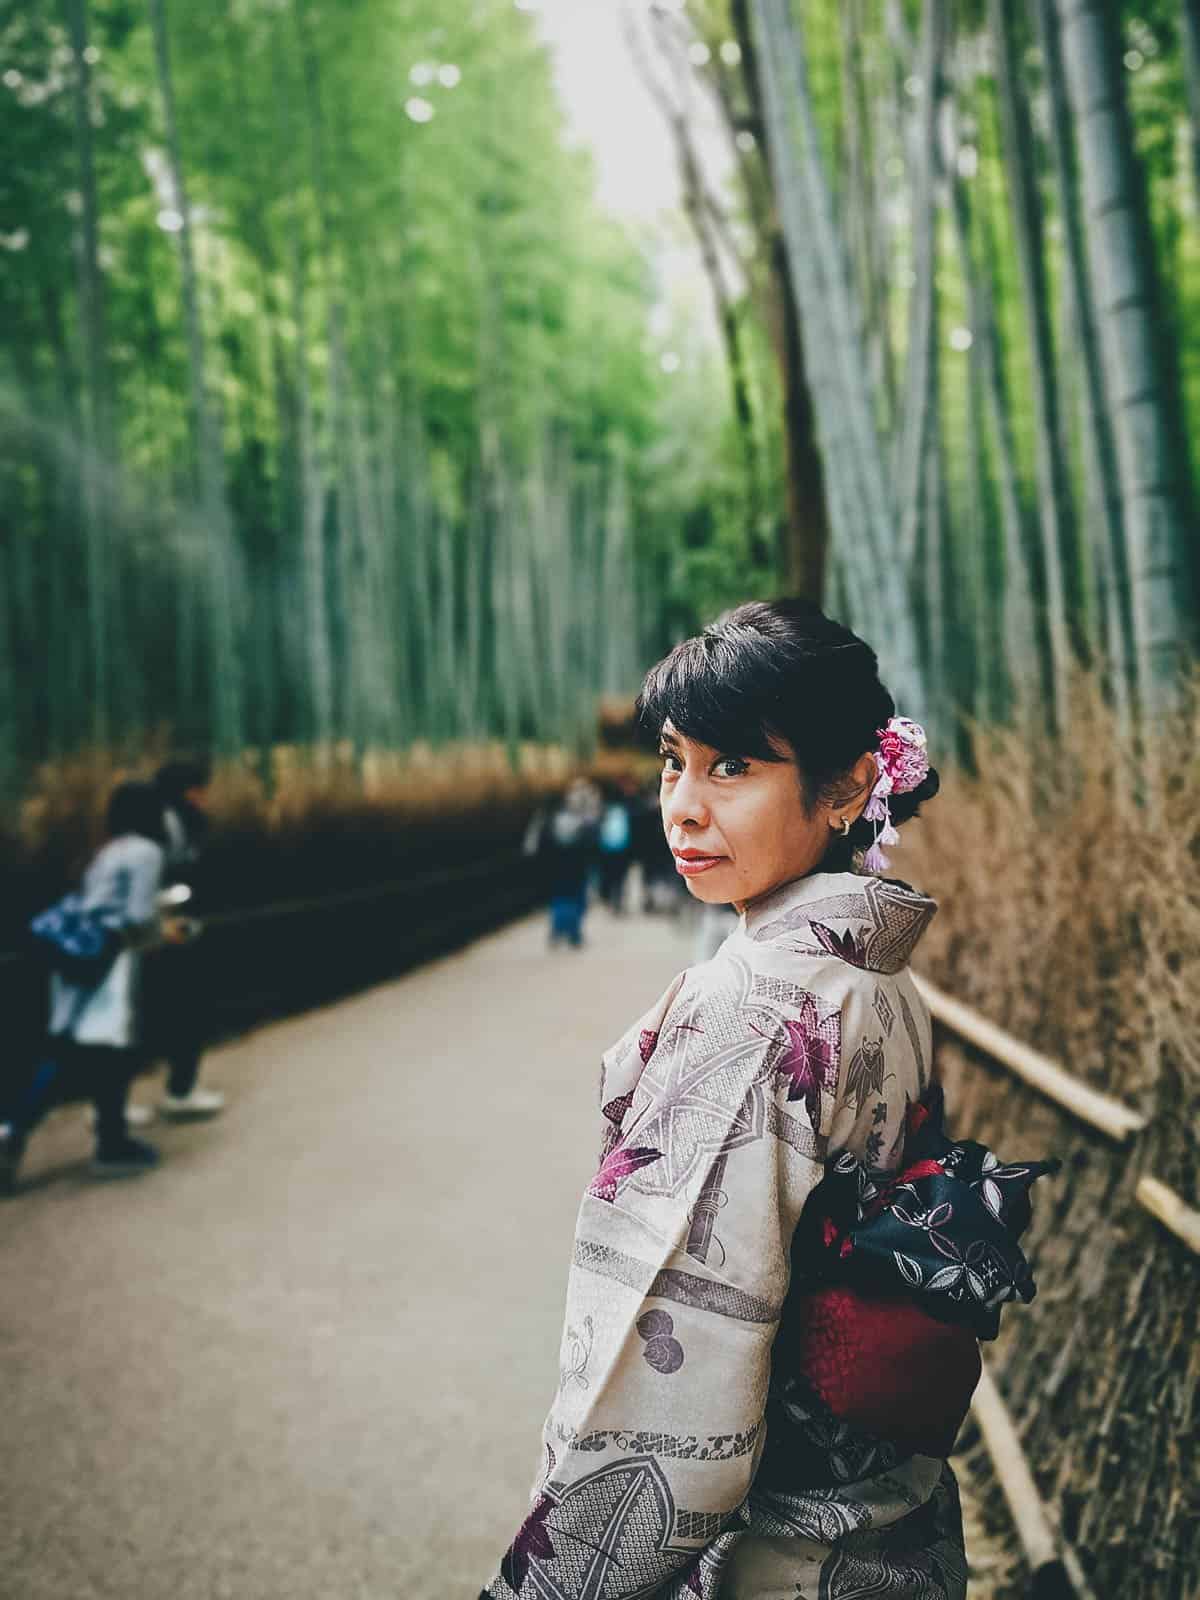 Woman in a kimono at Arashiyama Bamboo Grove